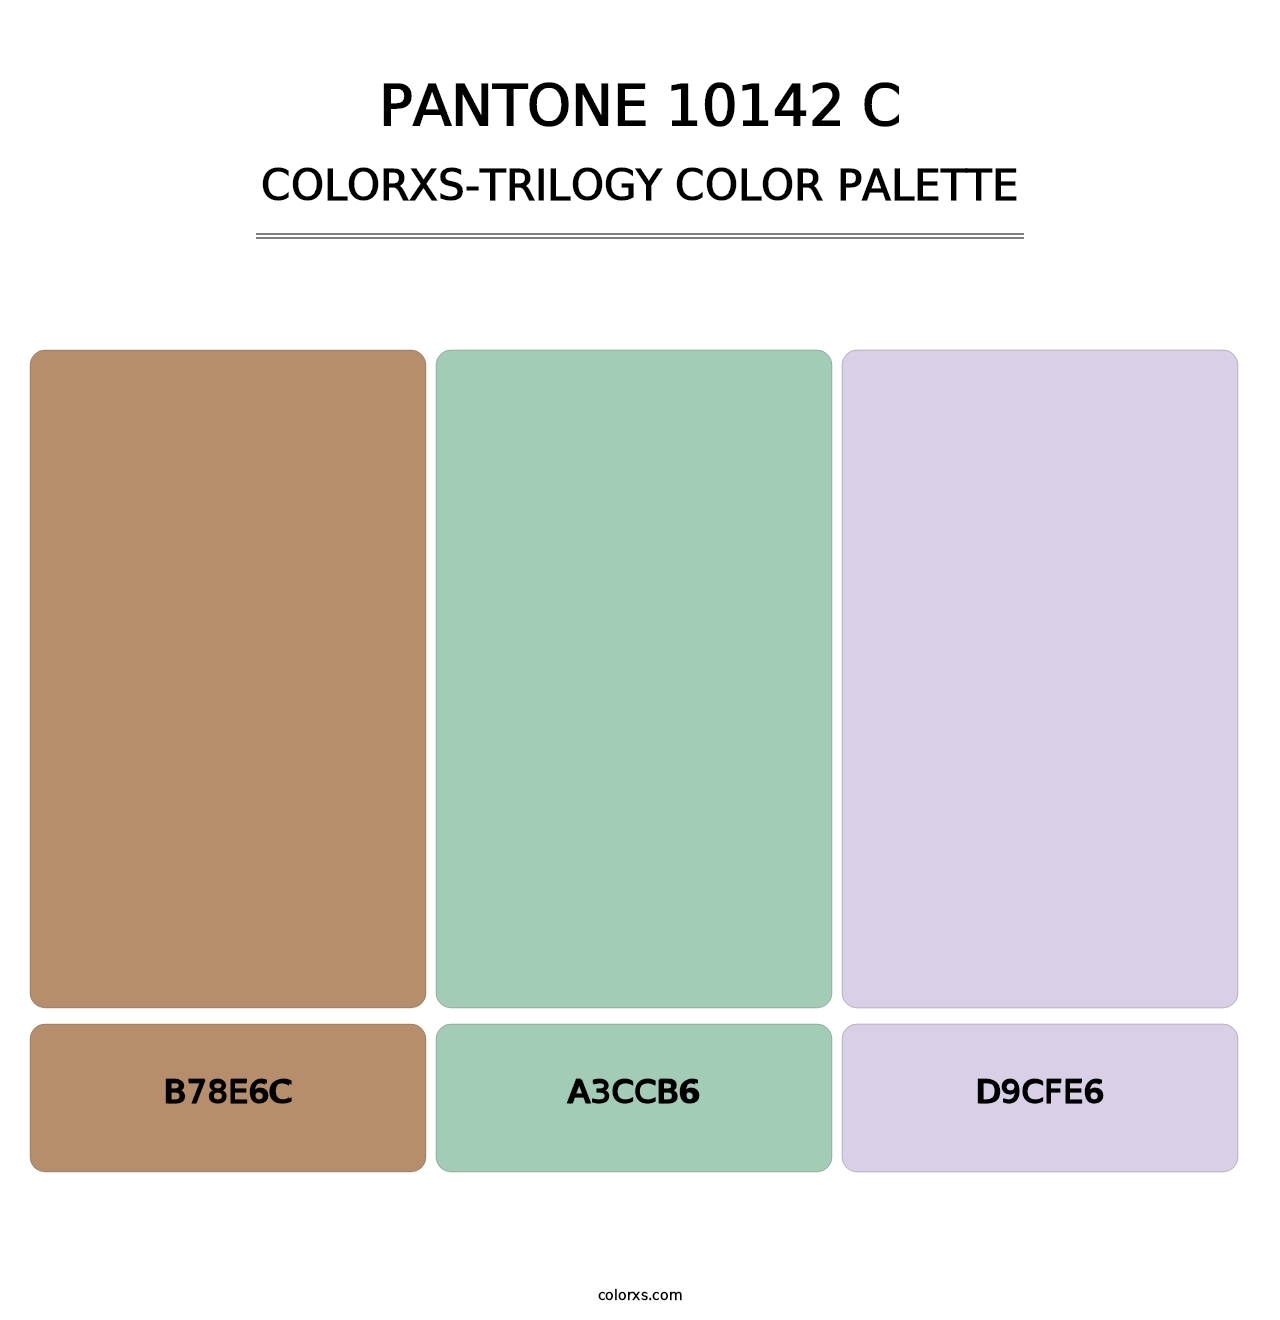 PANTONE 10142 C - Colorxs Trilogy Palette